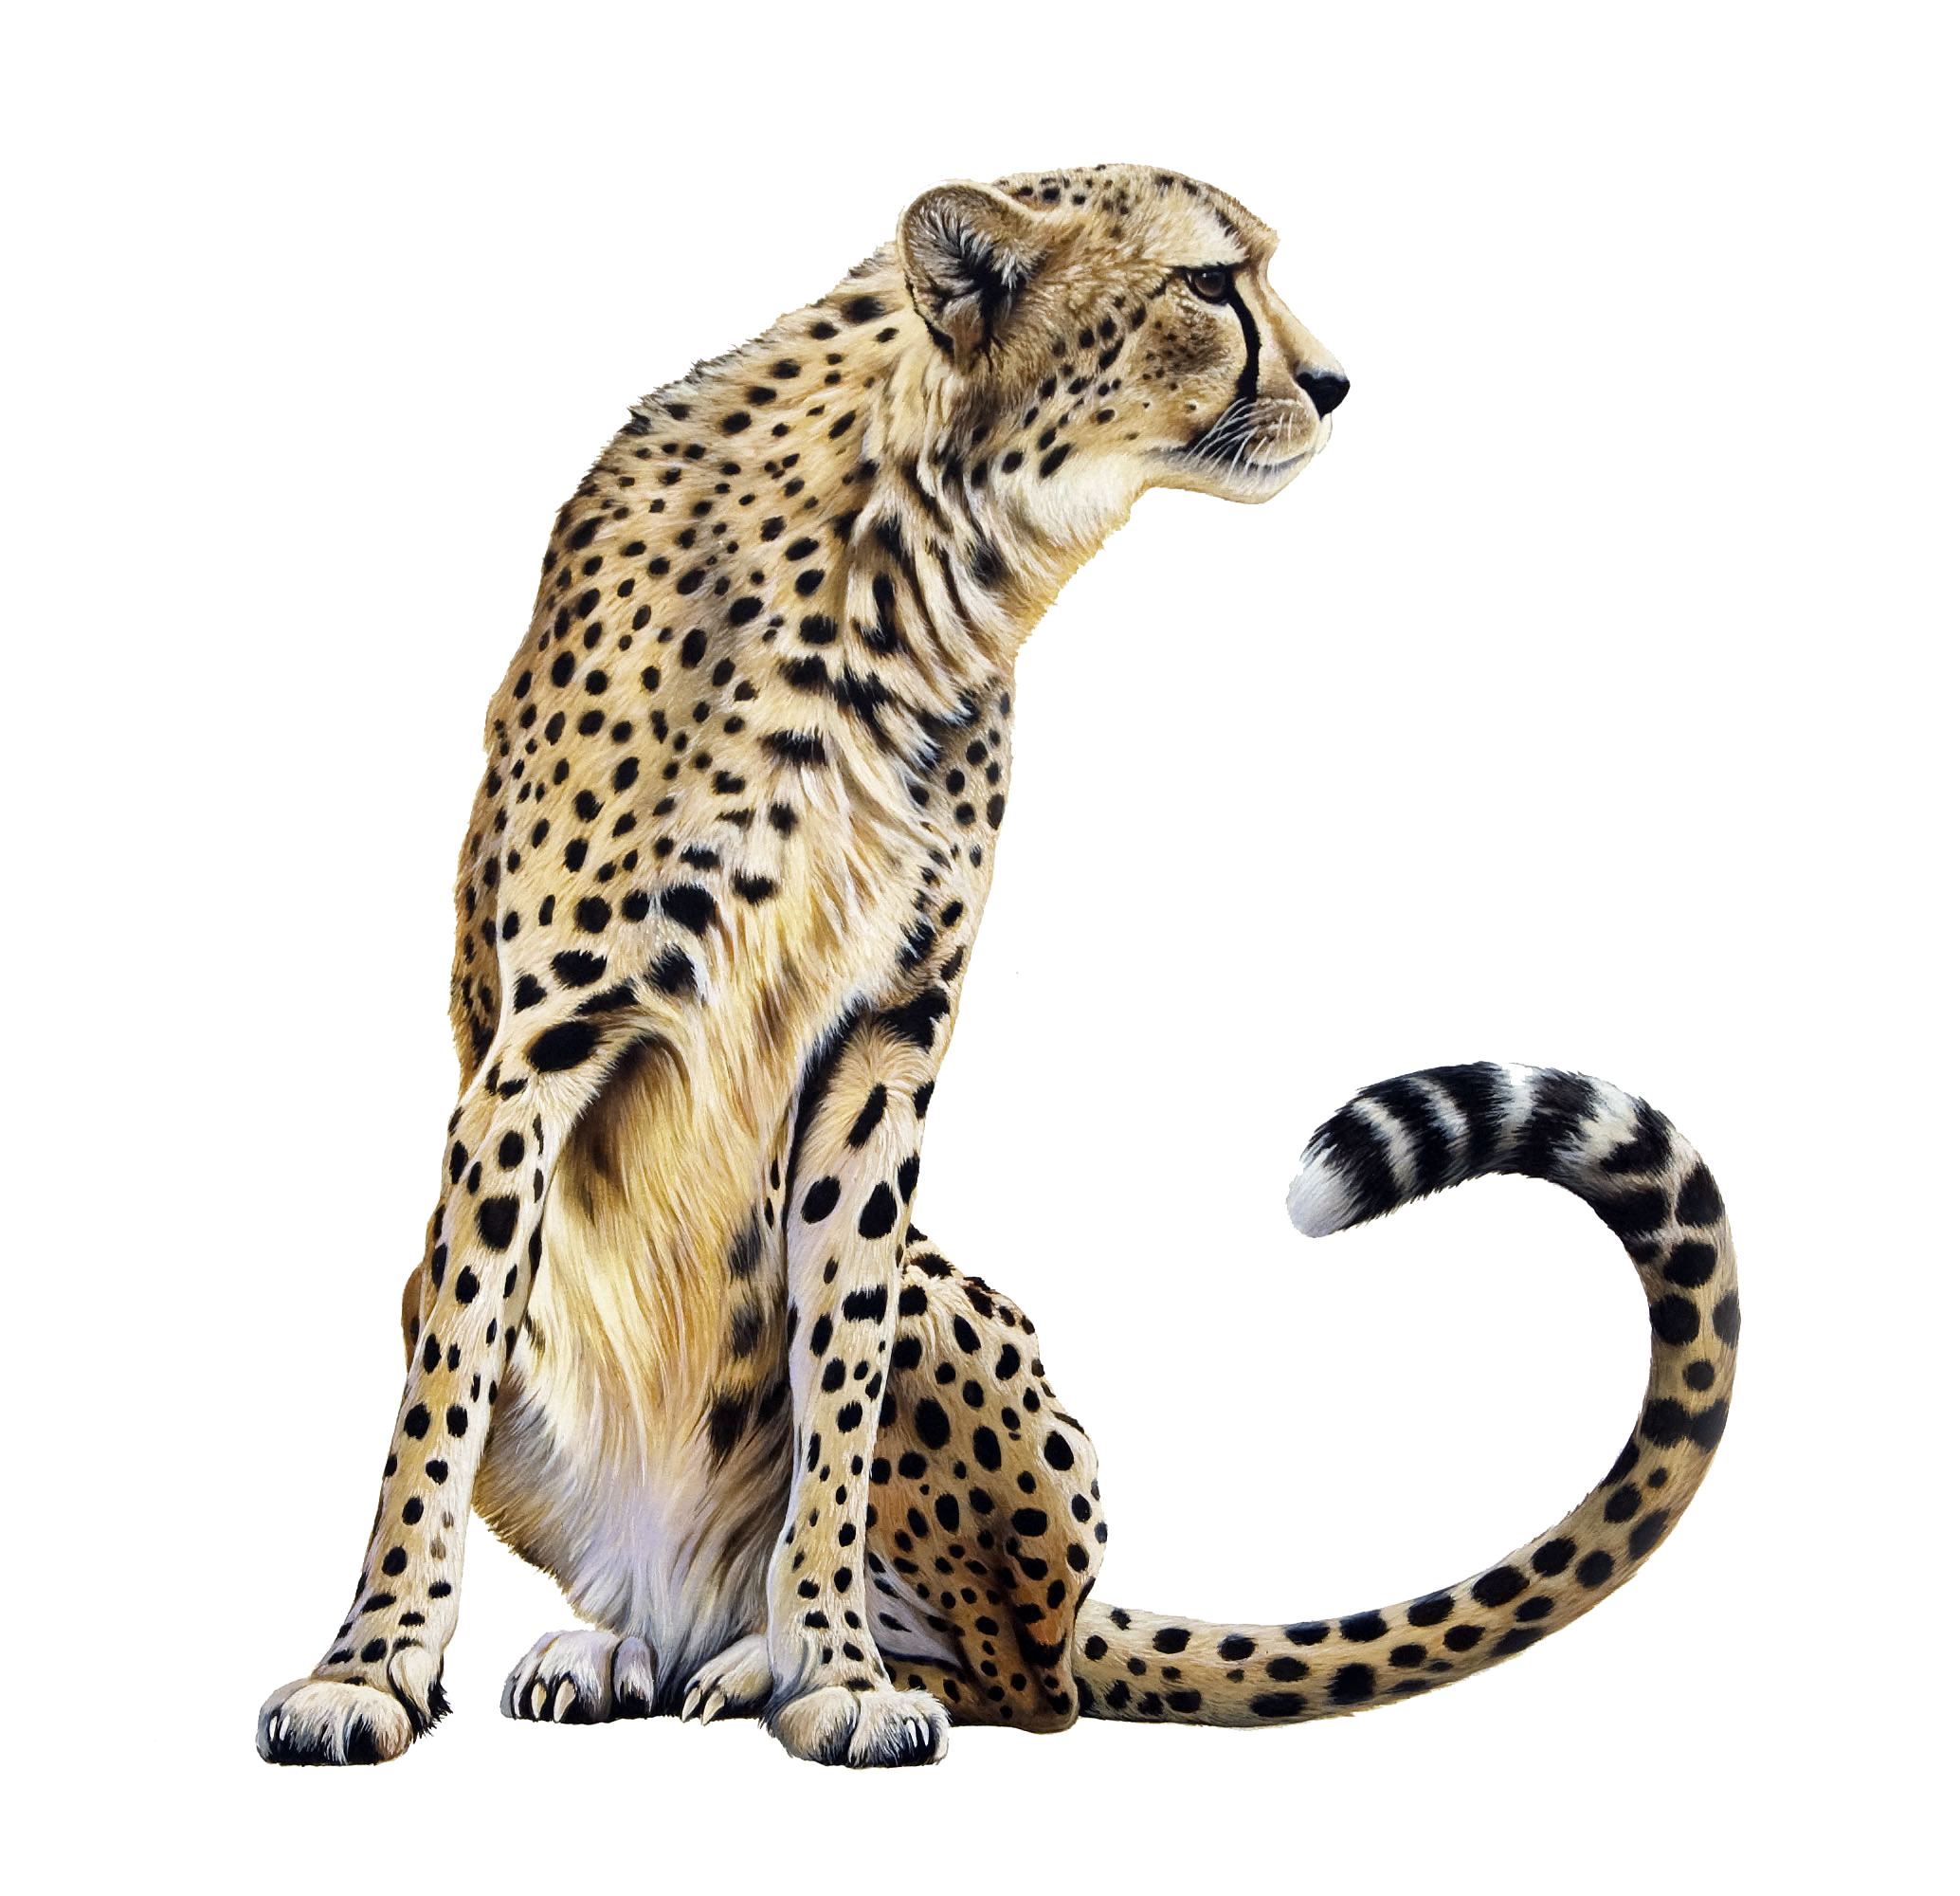 Cheetah Png Image PNG Image